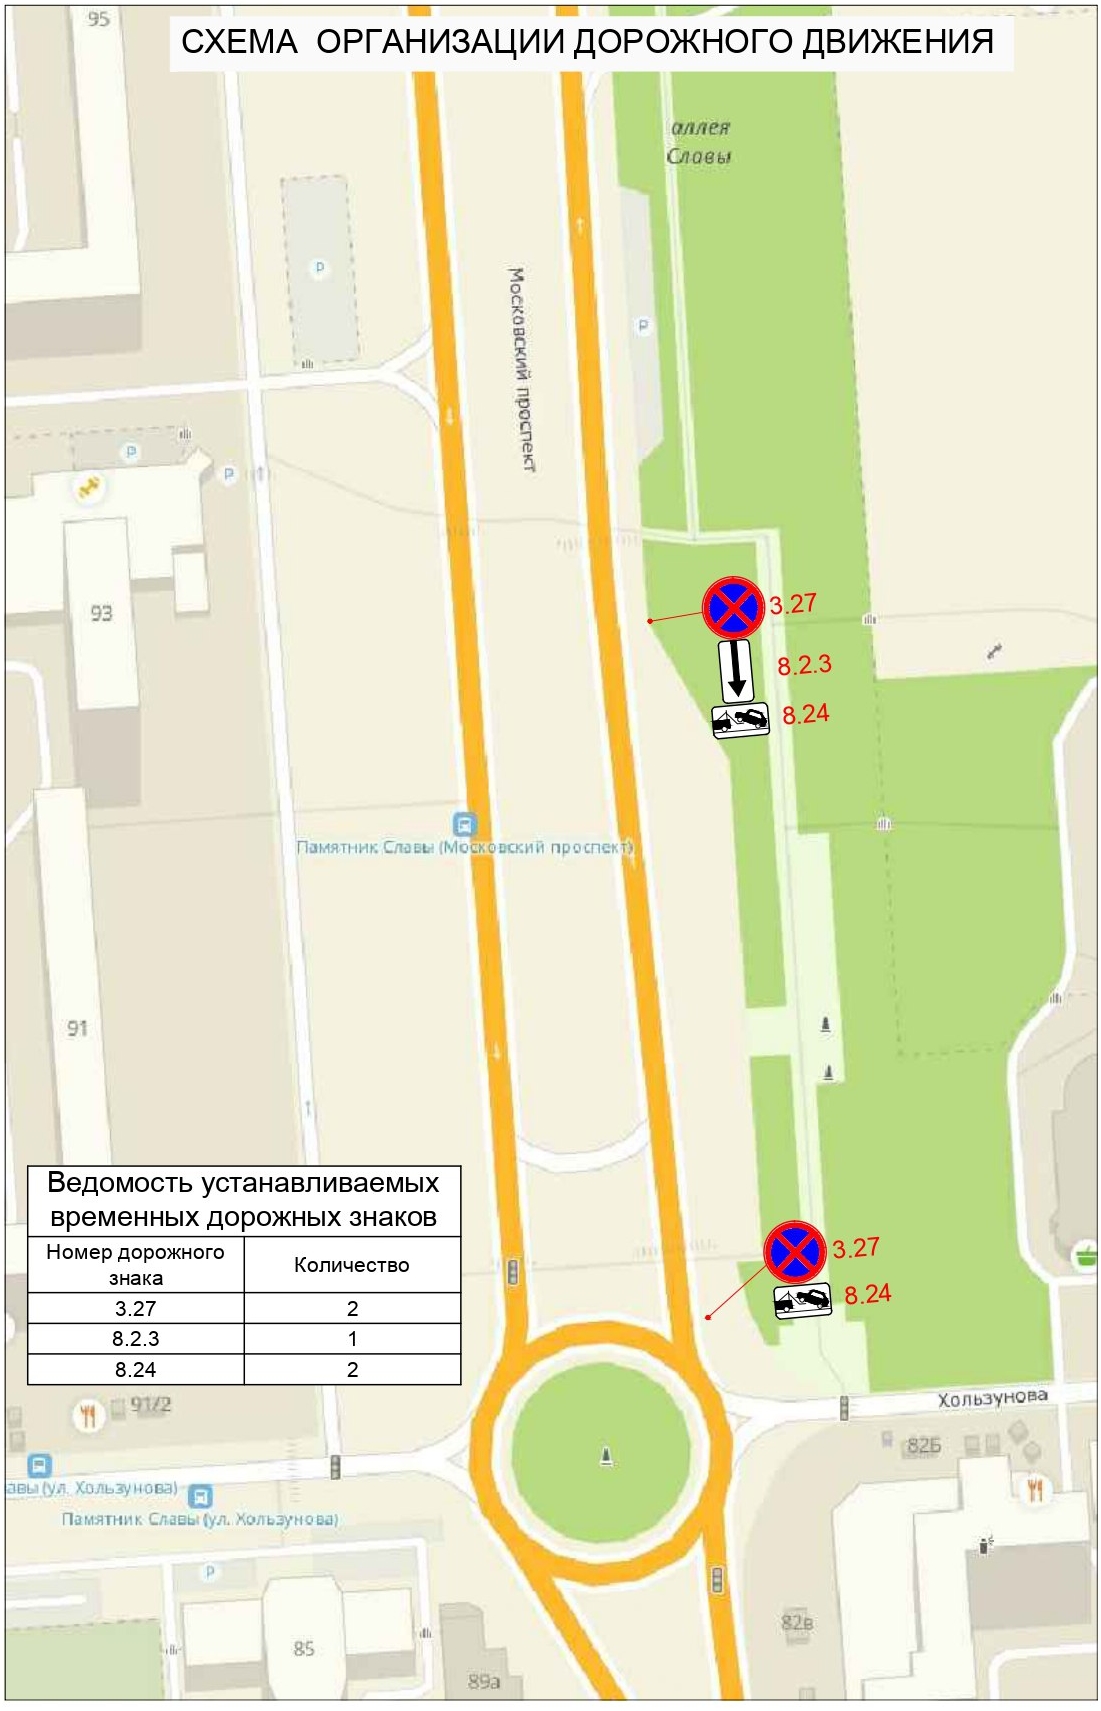 Автомобилистов предупредили о запрете парковки у памятника Славы в Воронеже